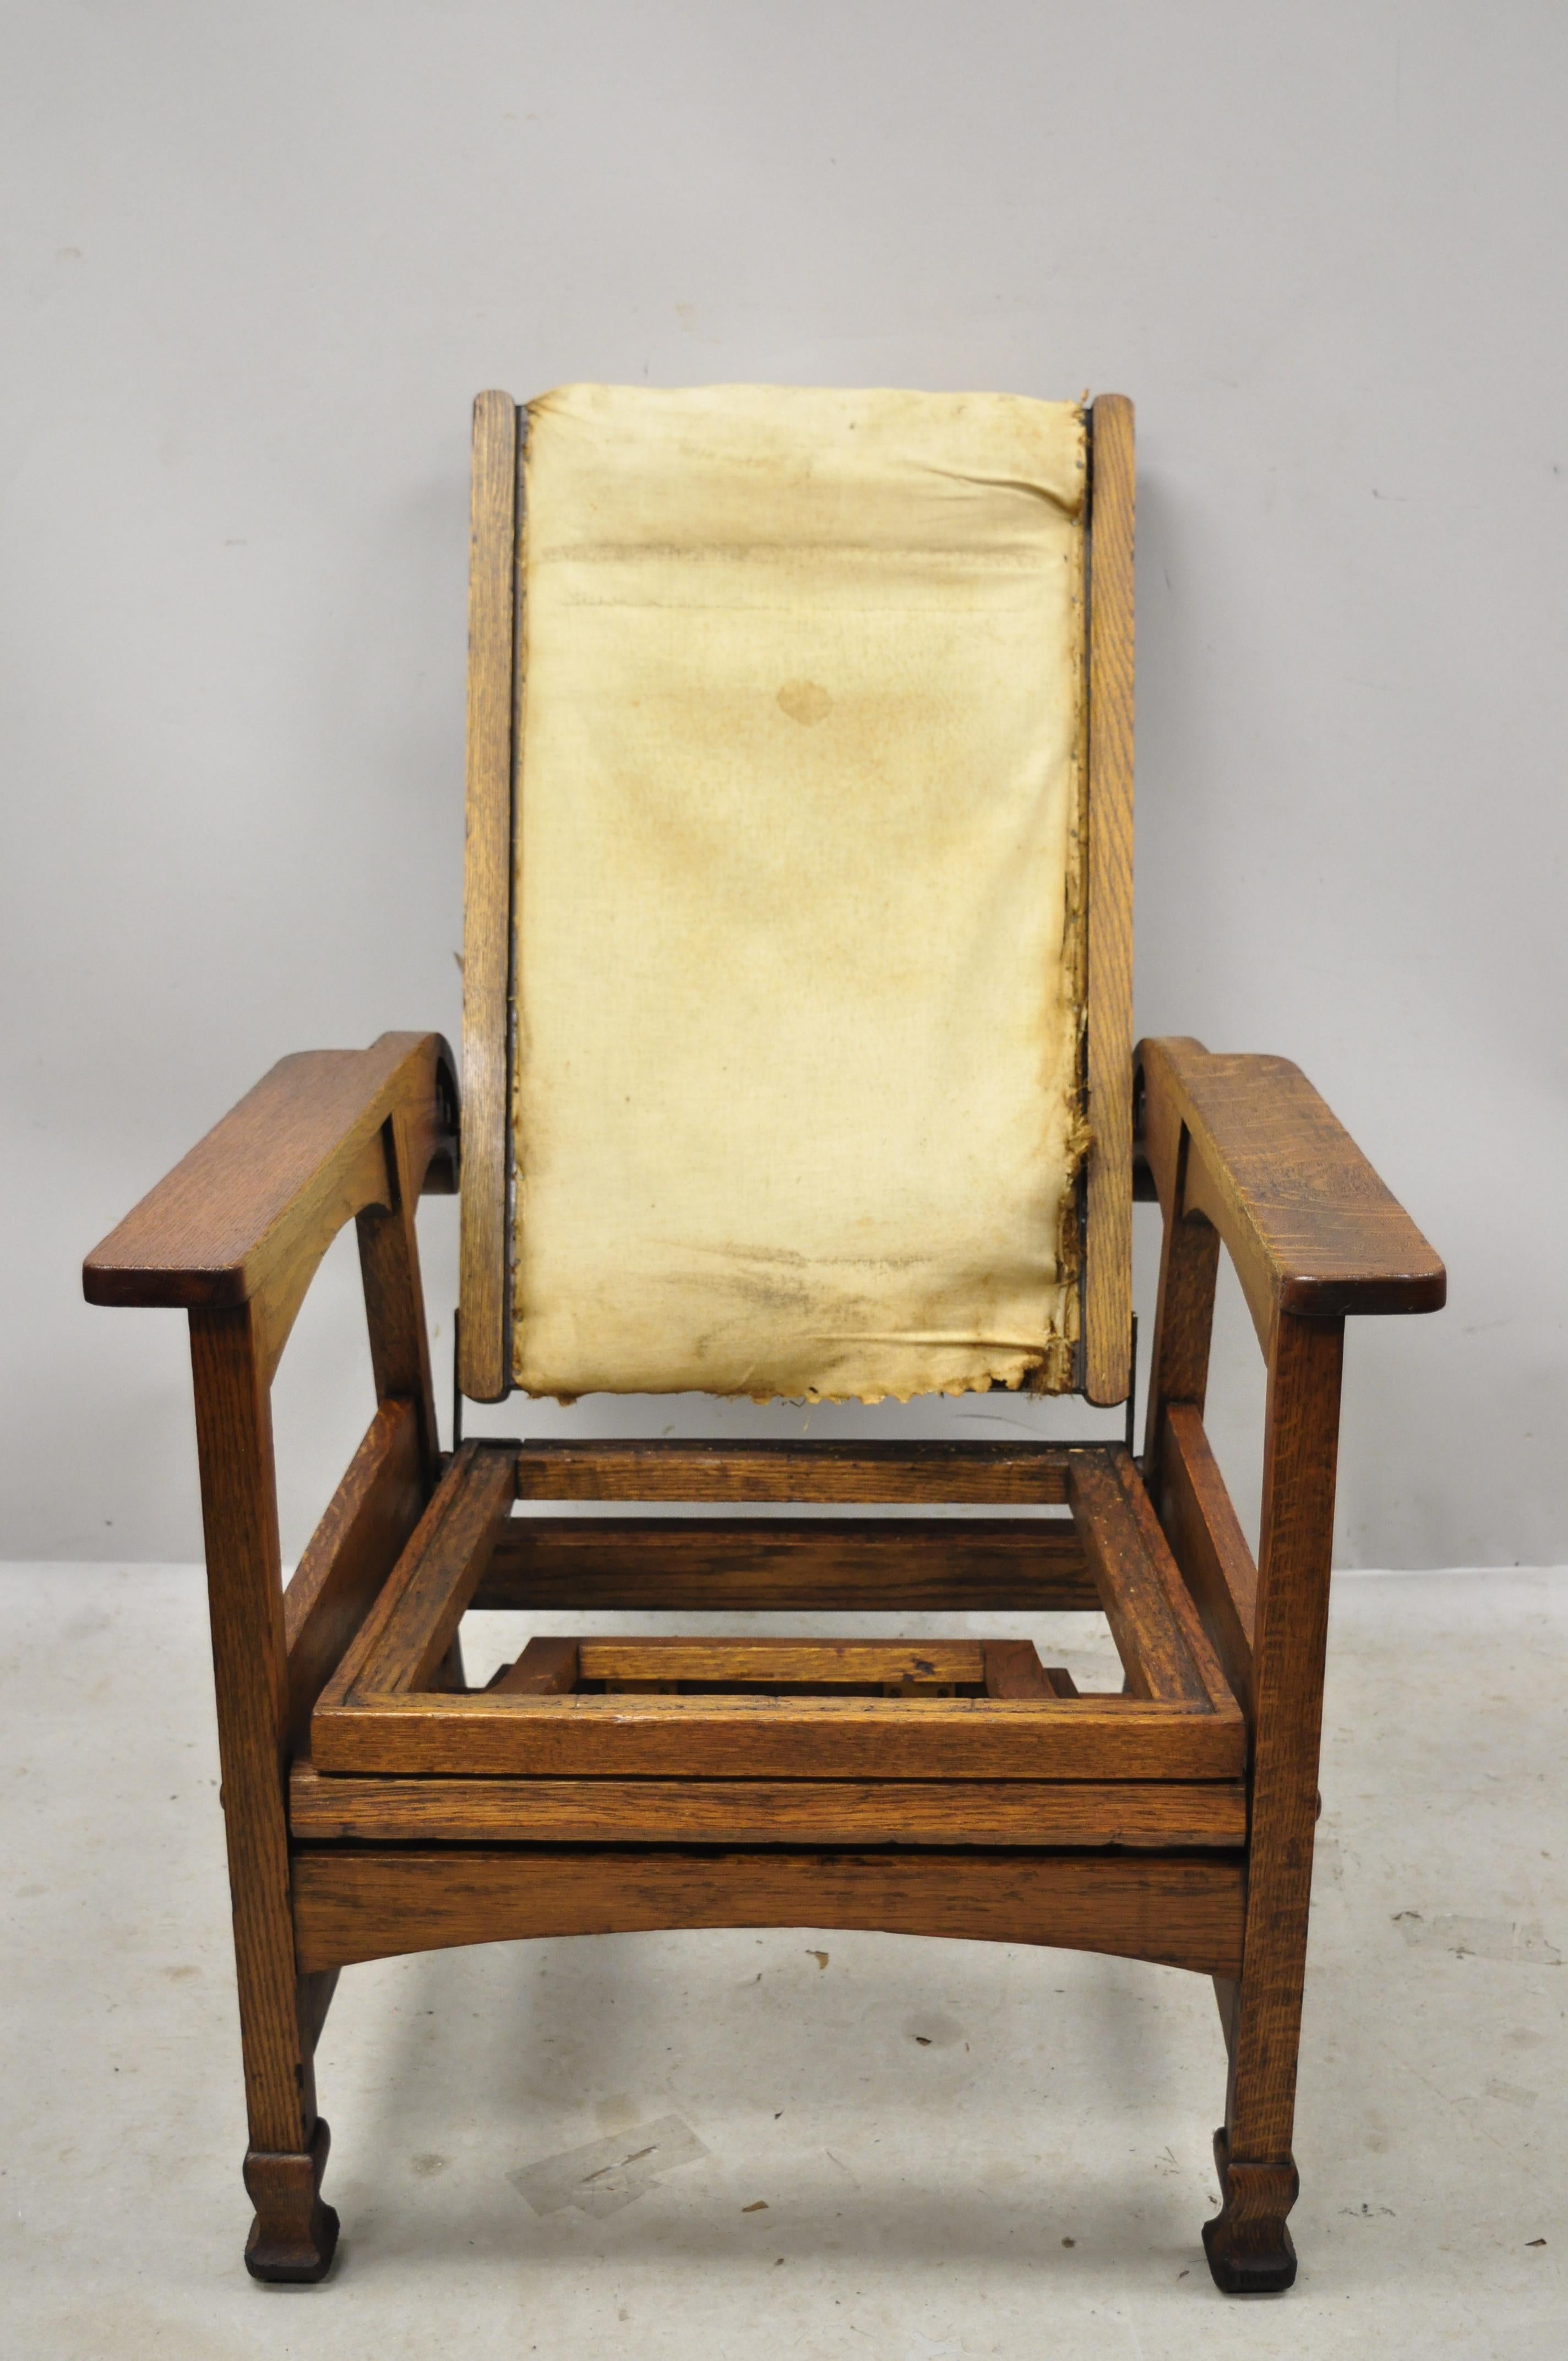 Antique Mission Oak Arts & Crafts fauteuil Morris inclinable avec repose-pieds rabattable ottoman attribué à Hunzinger. L'article comporte un repose-pieds ottoman pliable, un dossier réglable, une construction en bois massif, un beau grain de bois,